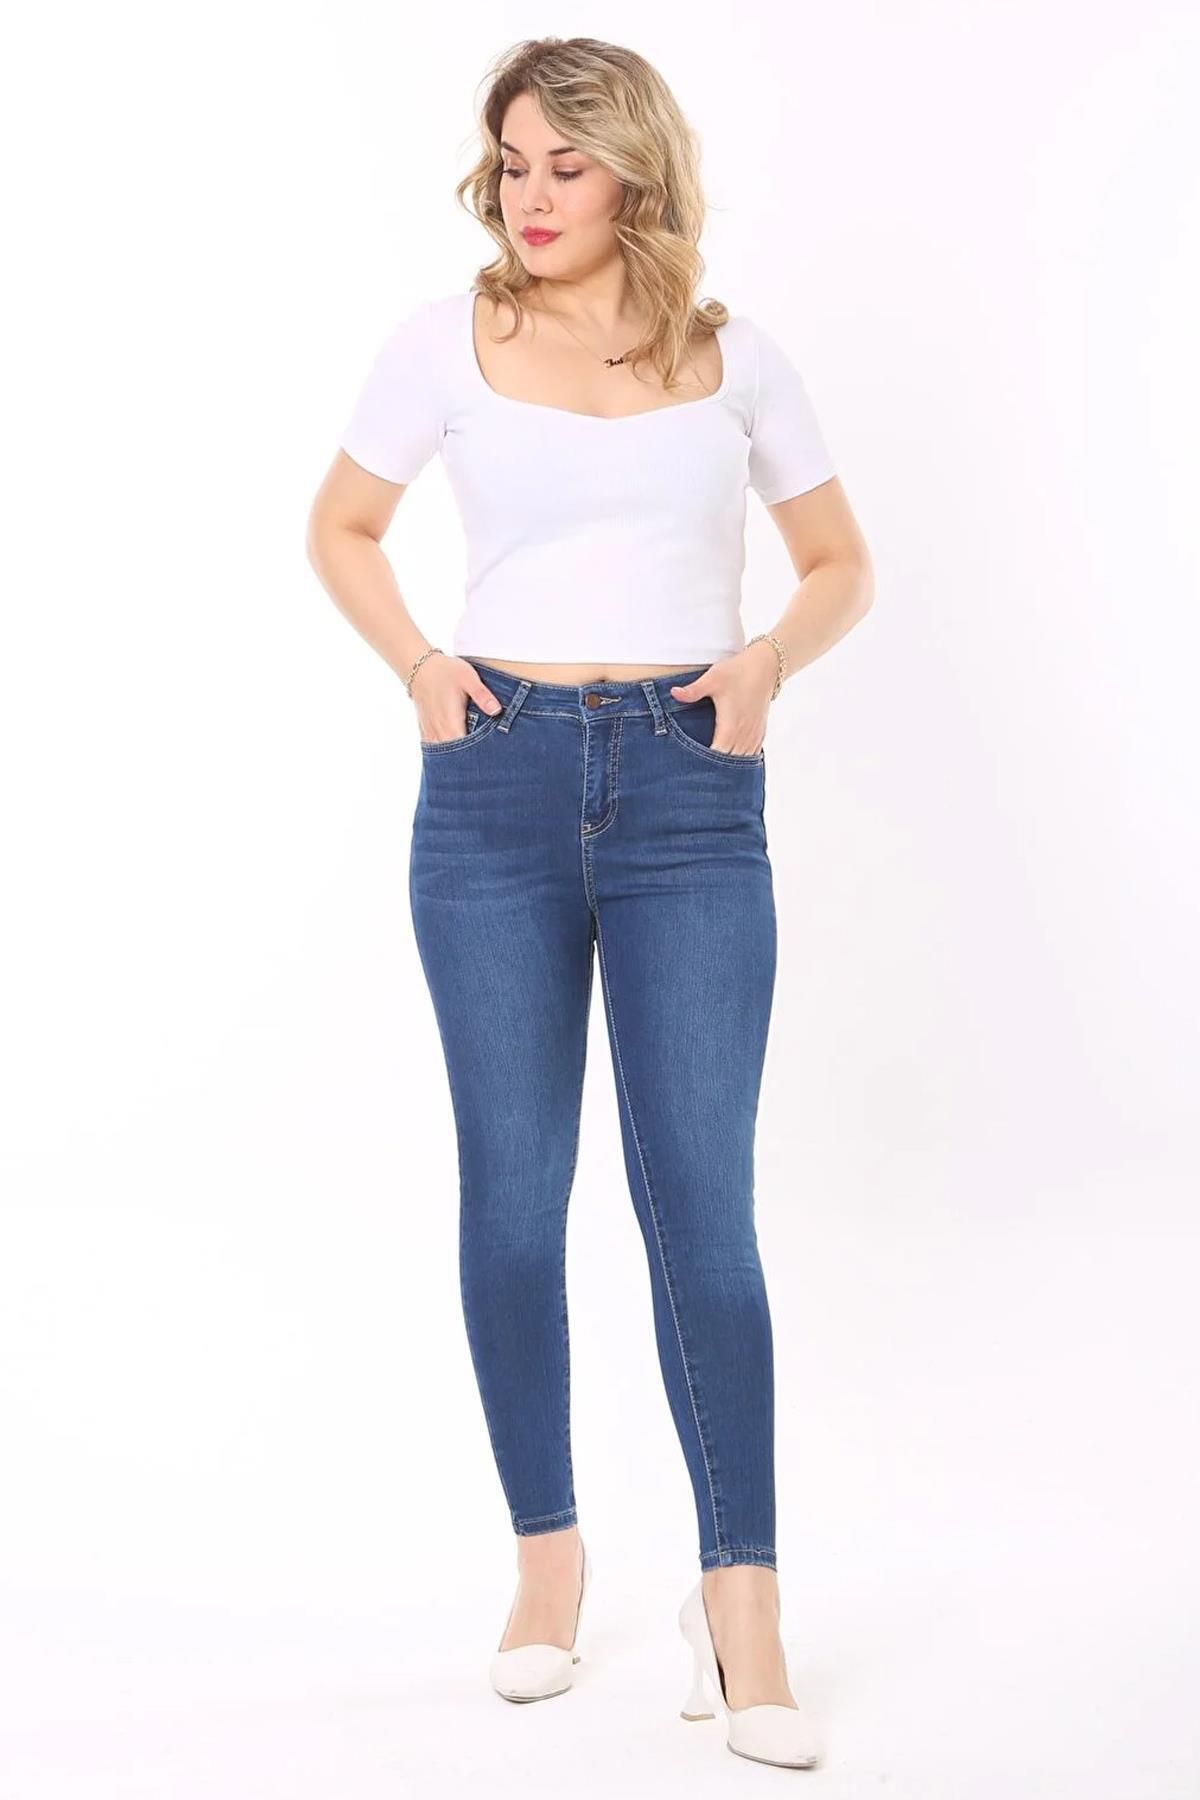 CEDY DENIM Kadın Mavi Ve Likralı Yüksek Bel Skinny Fit Jeans Kot Pantolon C596